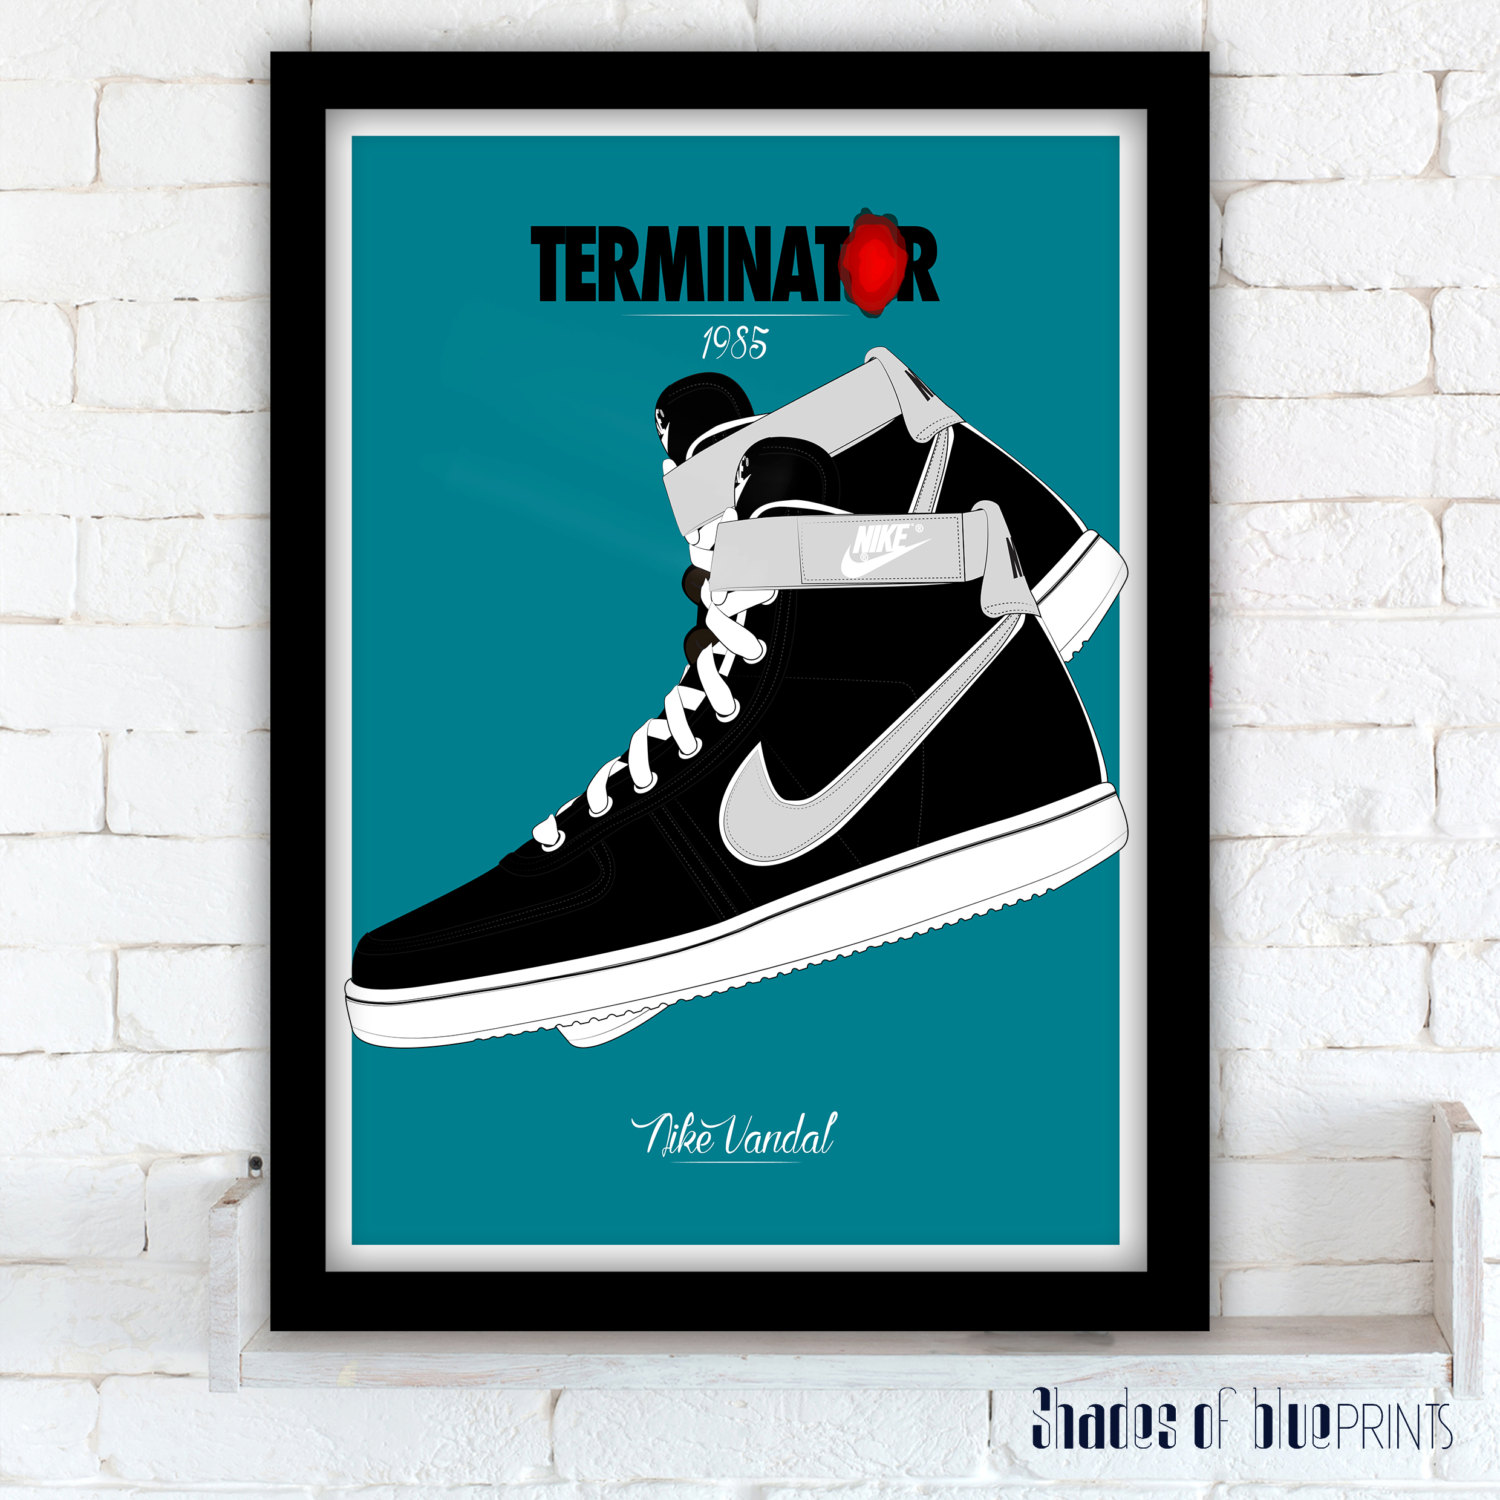 Affiche du film Terminator / Nike Vandal 1985 - Etsy France